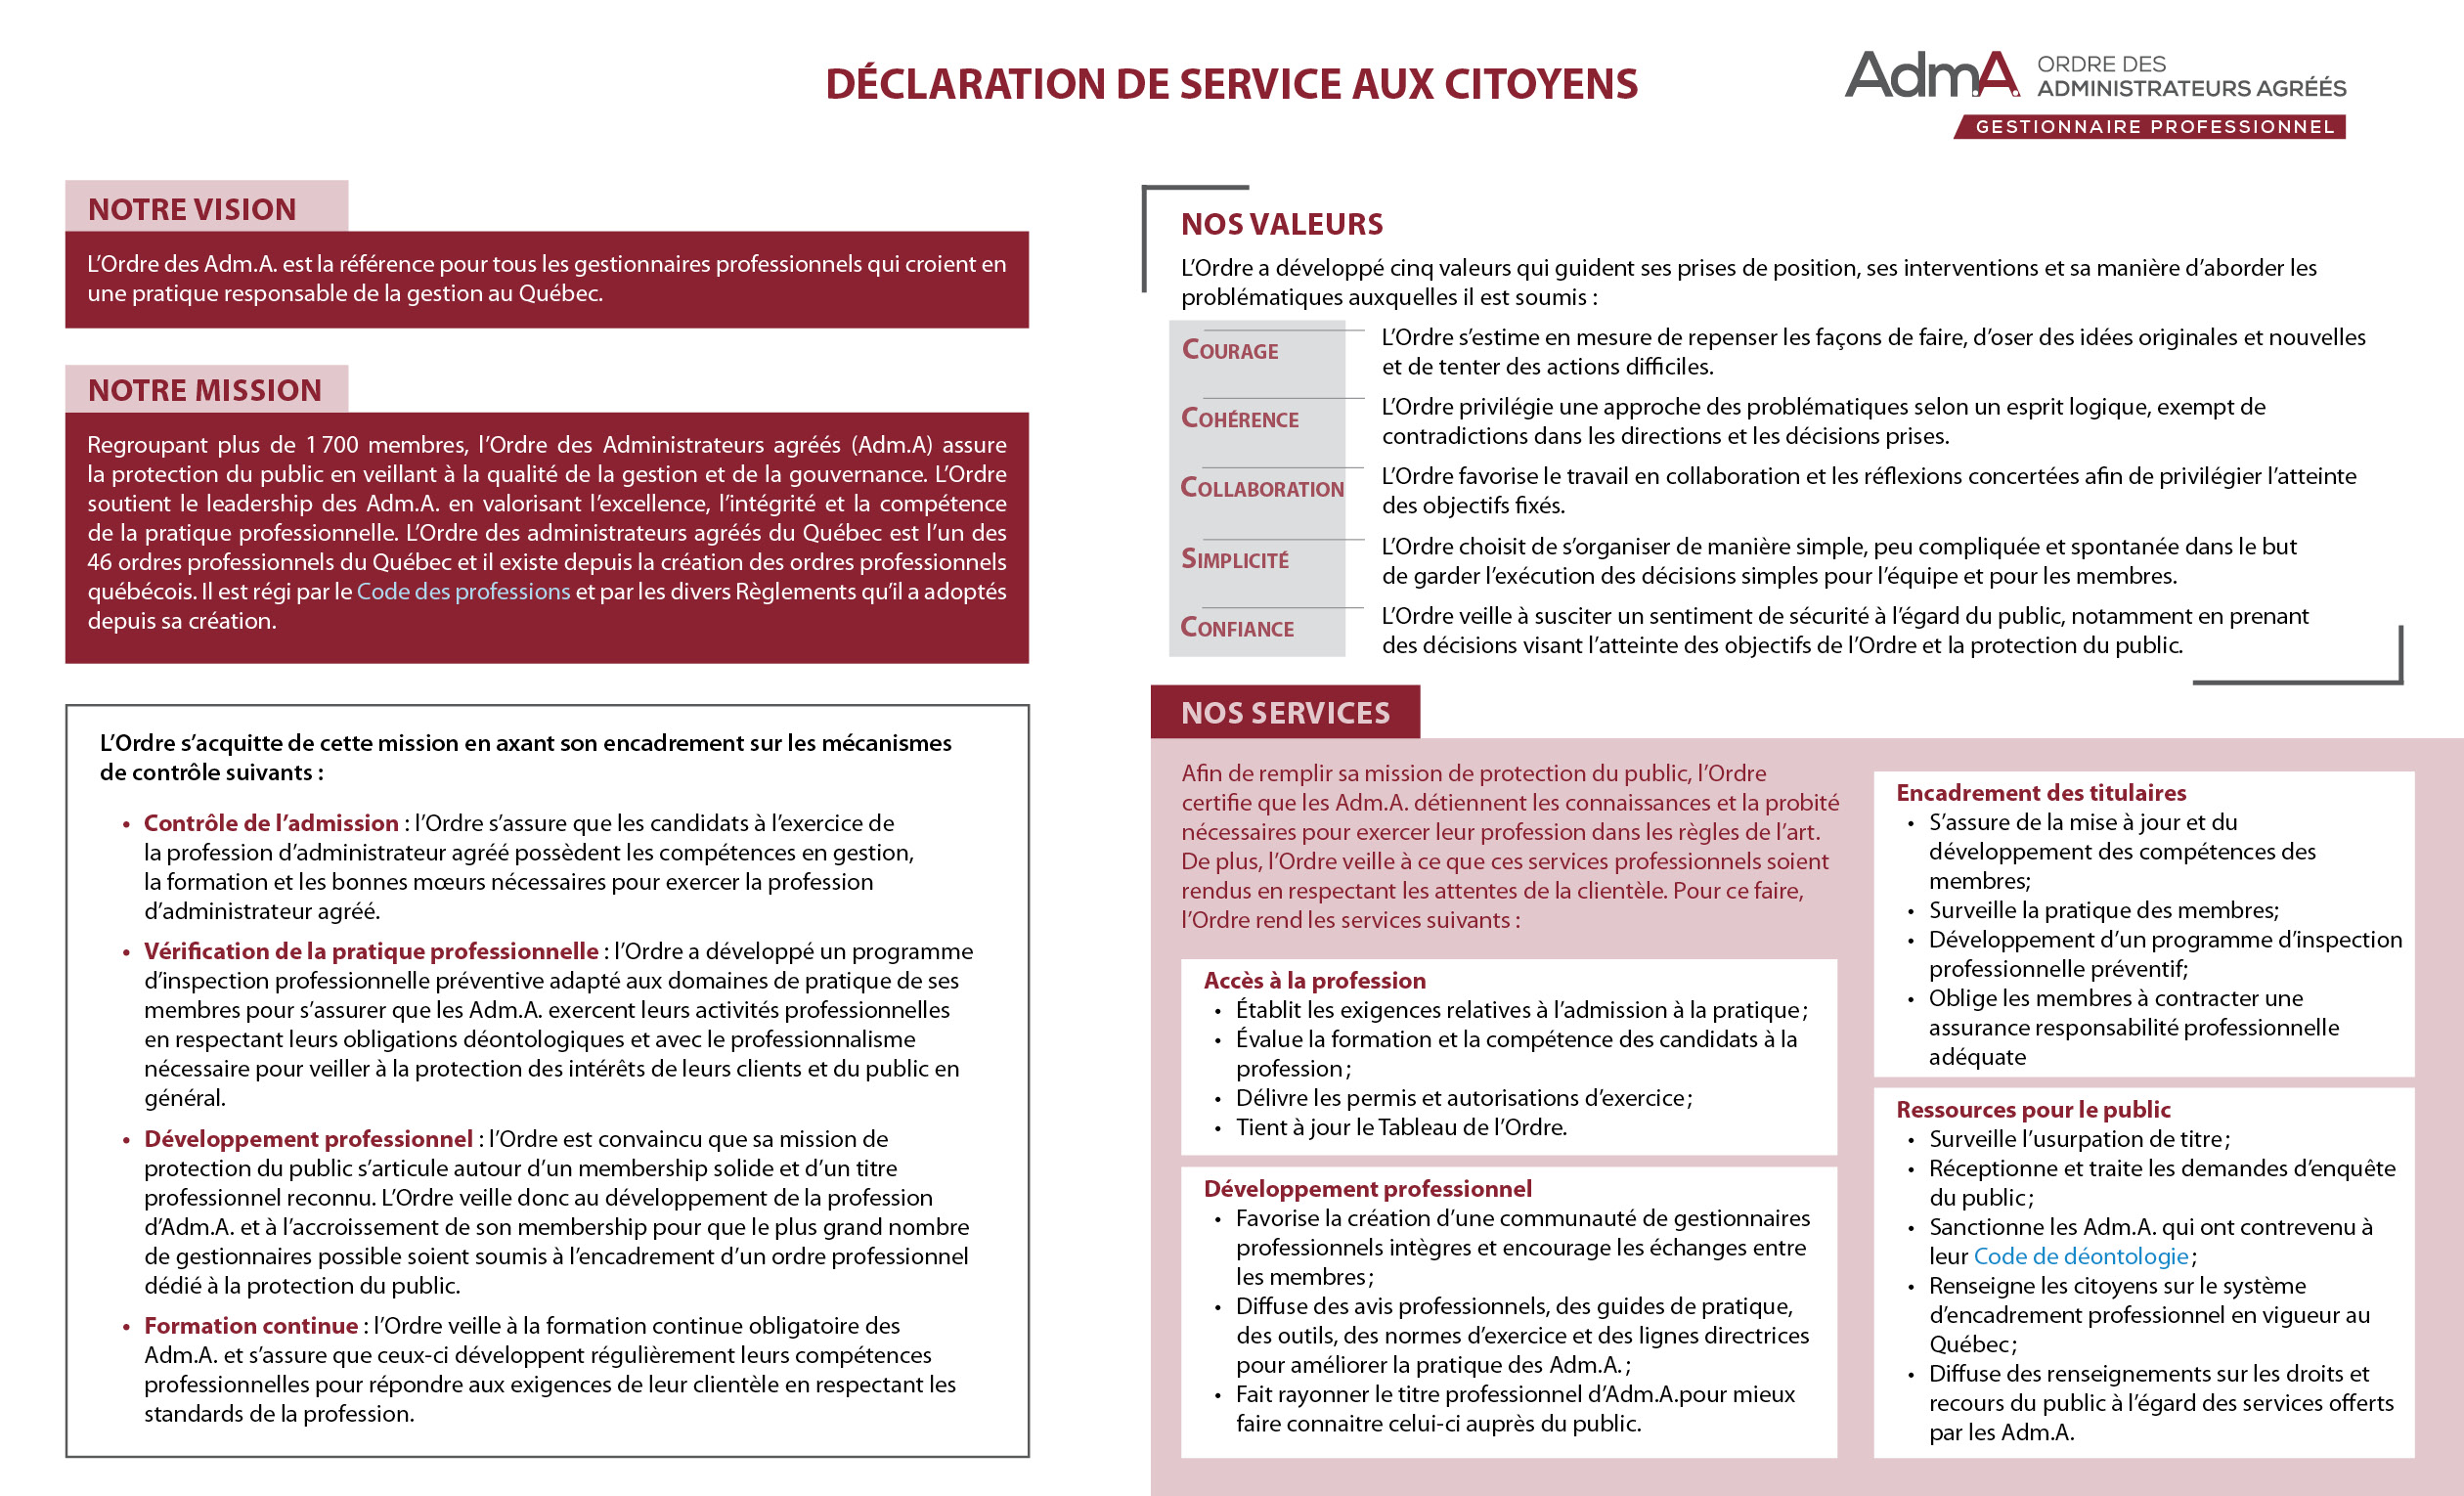 Déclaration de services aux citoyens - Janvier 2022